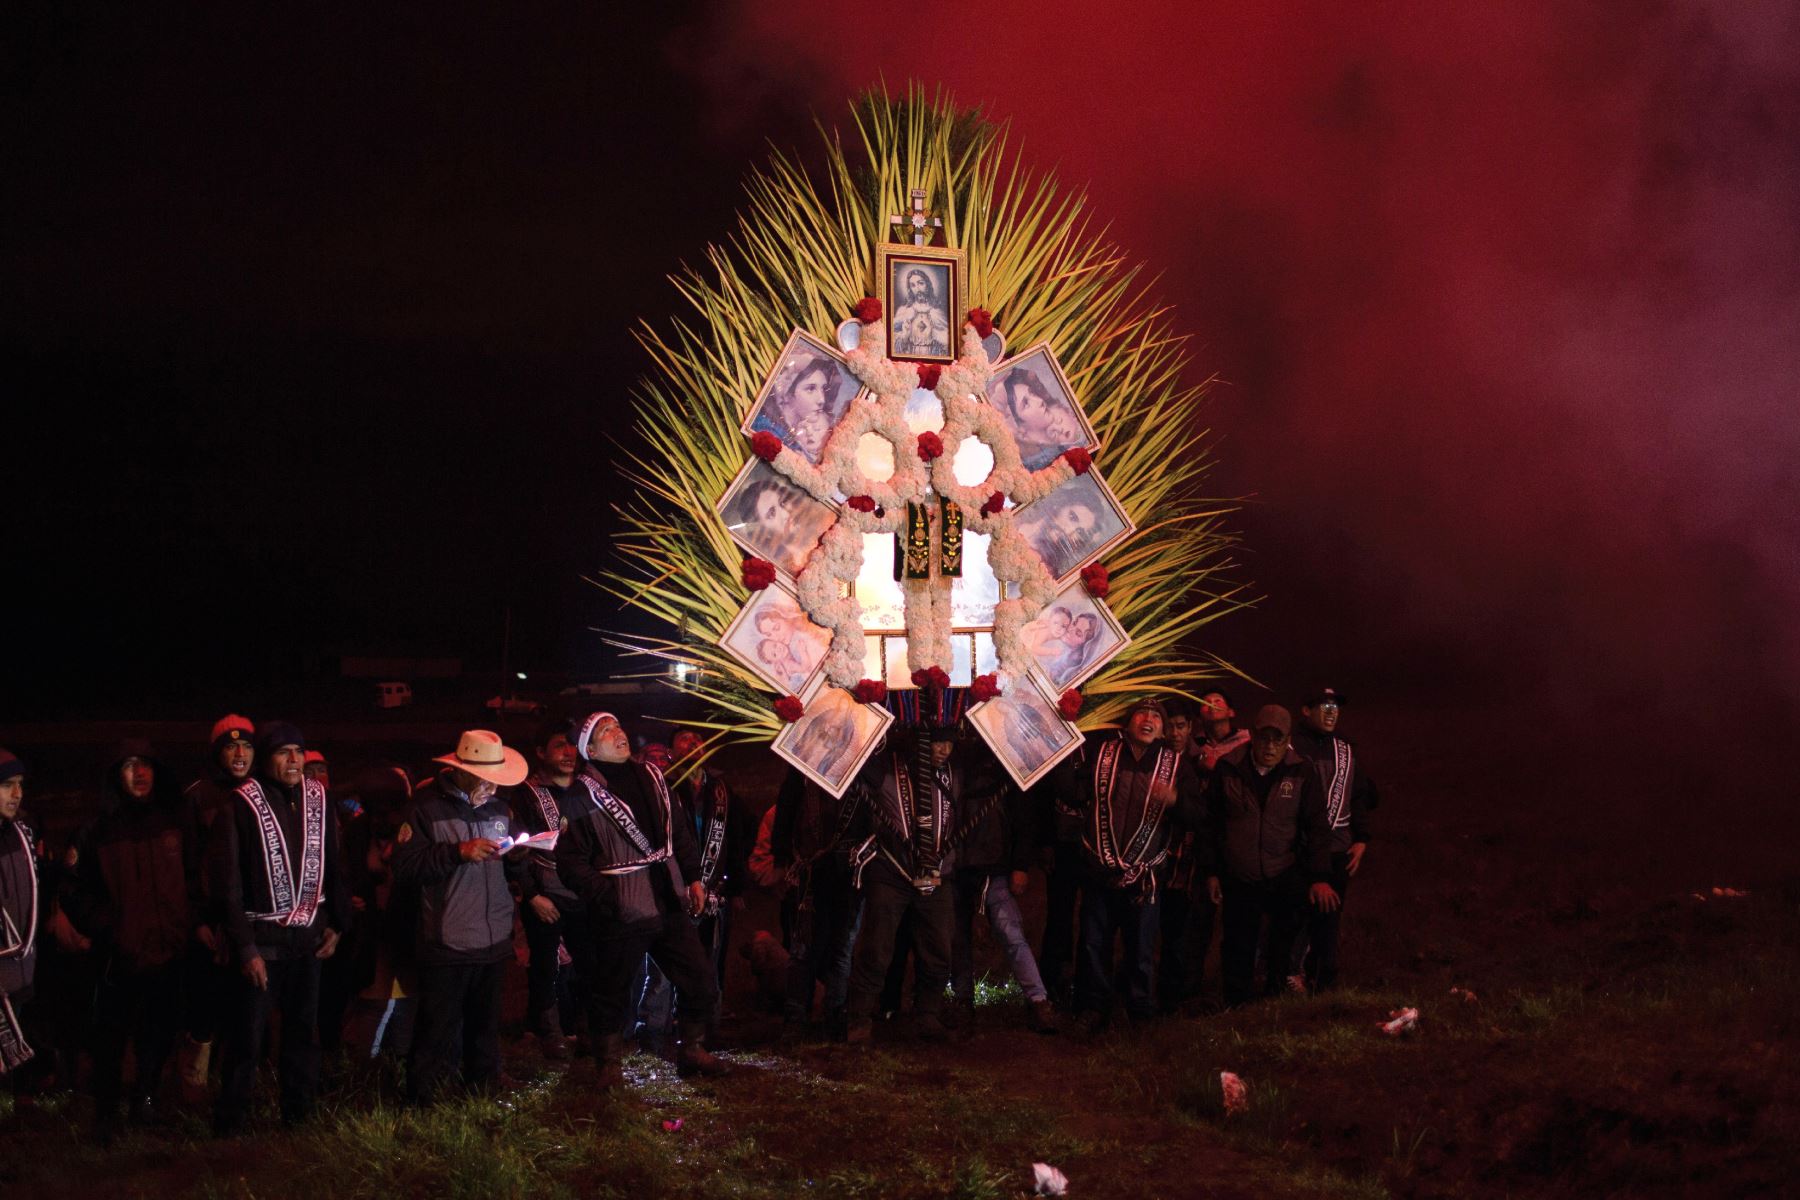 La tradicional Fiesta de las Cruces de Porcón toma relevancia en vísperas al Domingo de Ramos (2 de abril), día central de la festividad. Foto: Gabriel Tejada